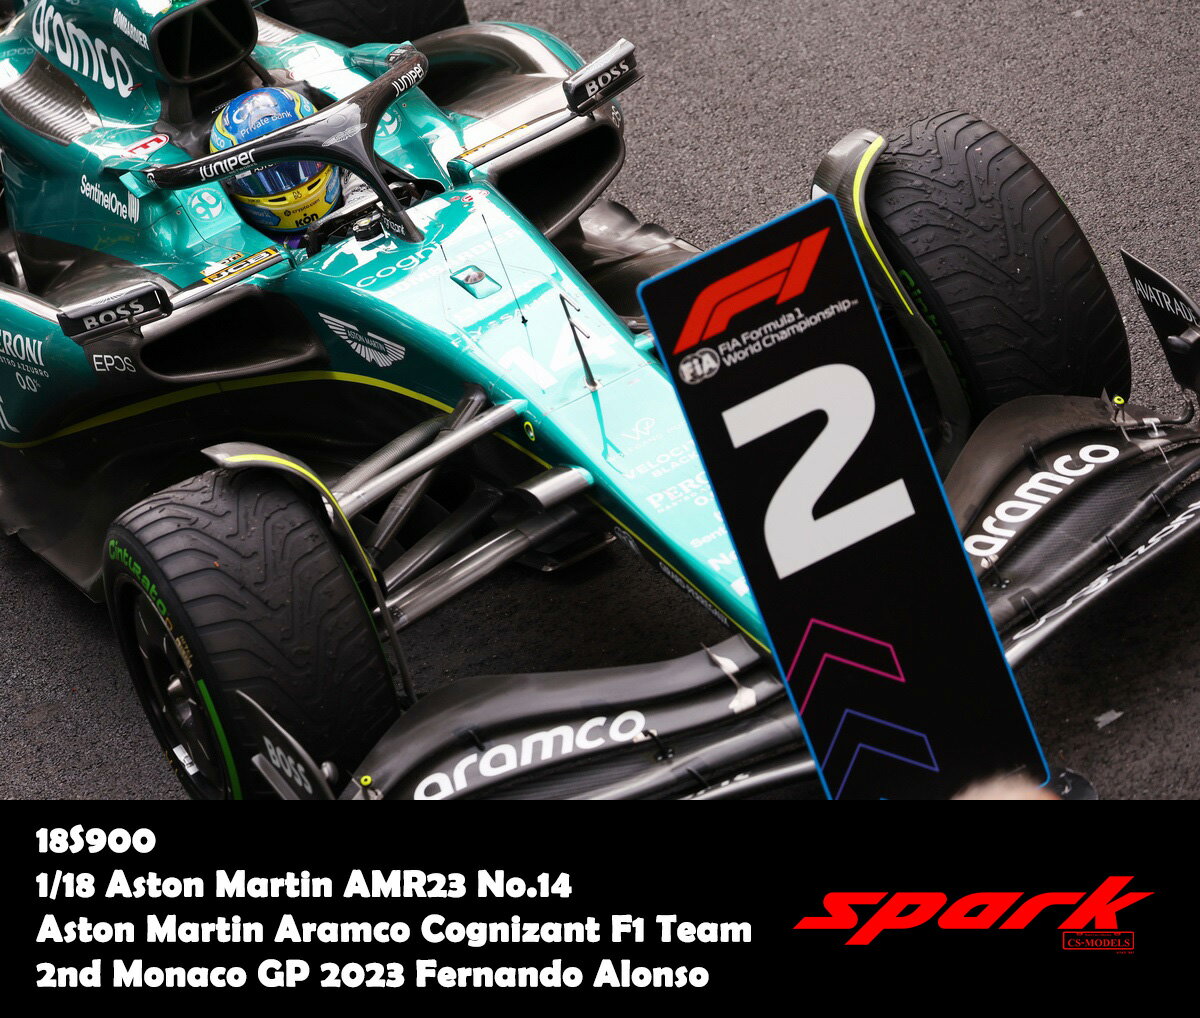 Spark スパーク 1/18 ミニカー レジン プロポーションモデル 2023年5月モナコGP 第2位 アストンマーチン Aston Martin AMR23 No.14 Aston Martin Aramco Cognizant F1 Team 2nd Monaco GP 2023 Fernando Alonso